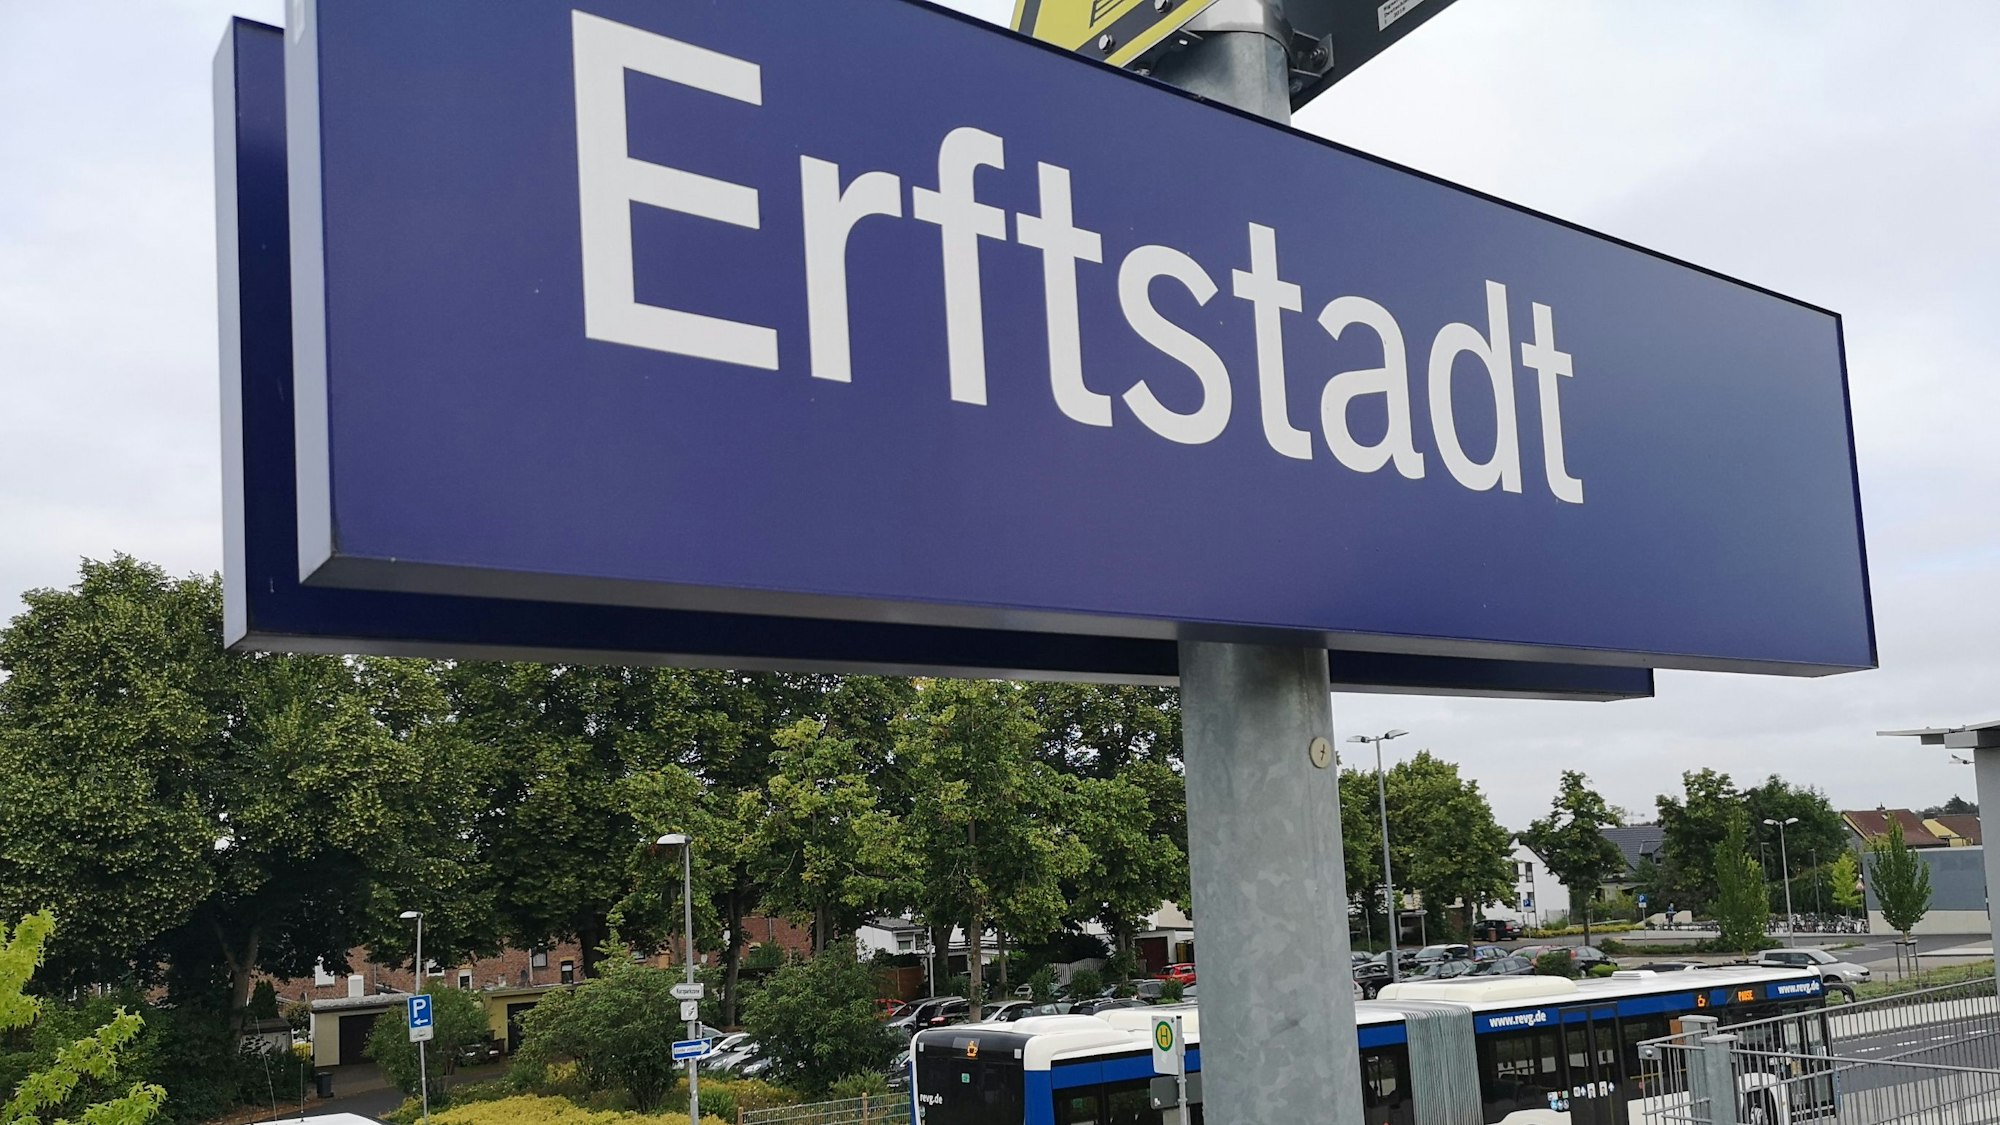 Ein Schild des Bahnhof Erftstadt.